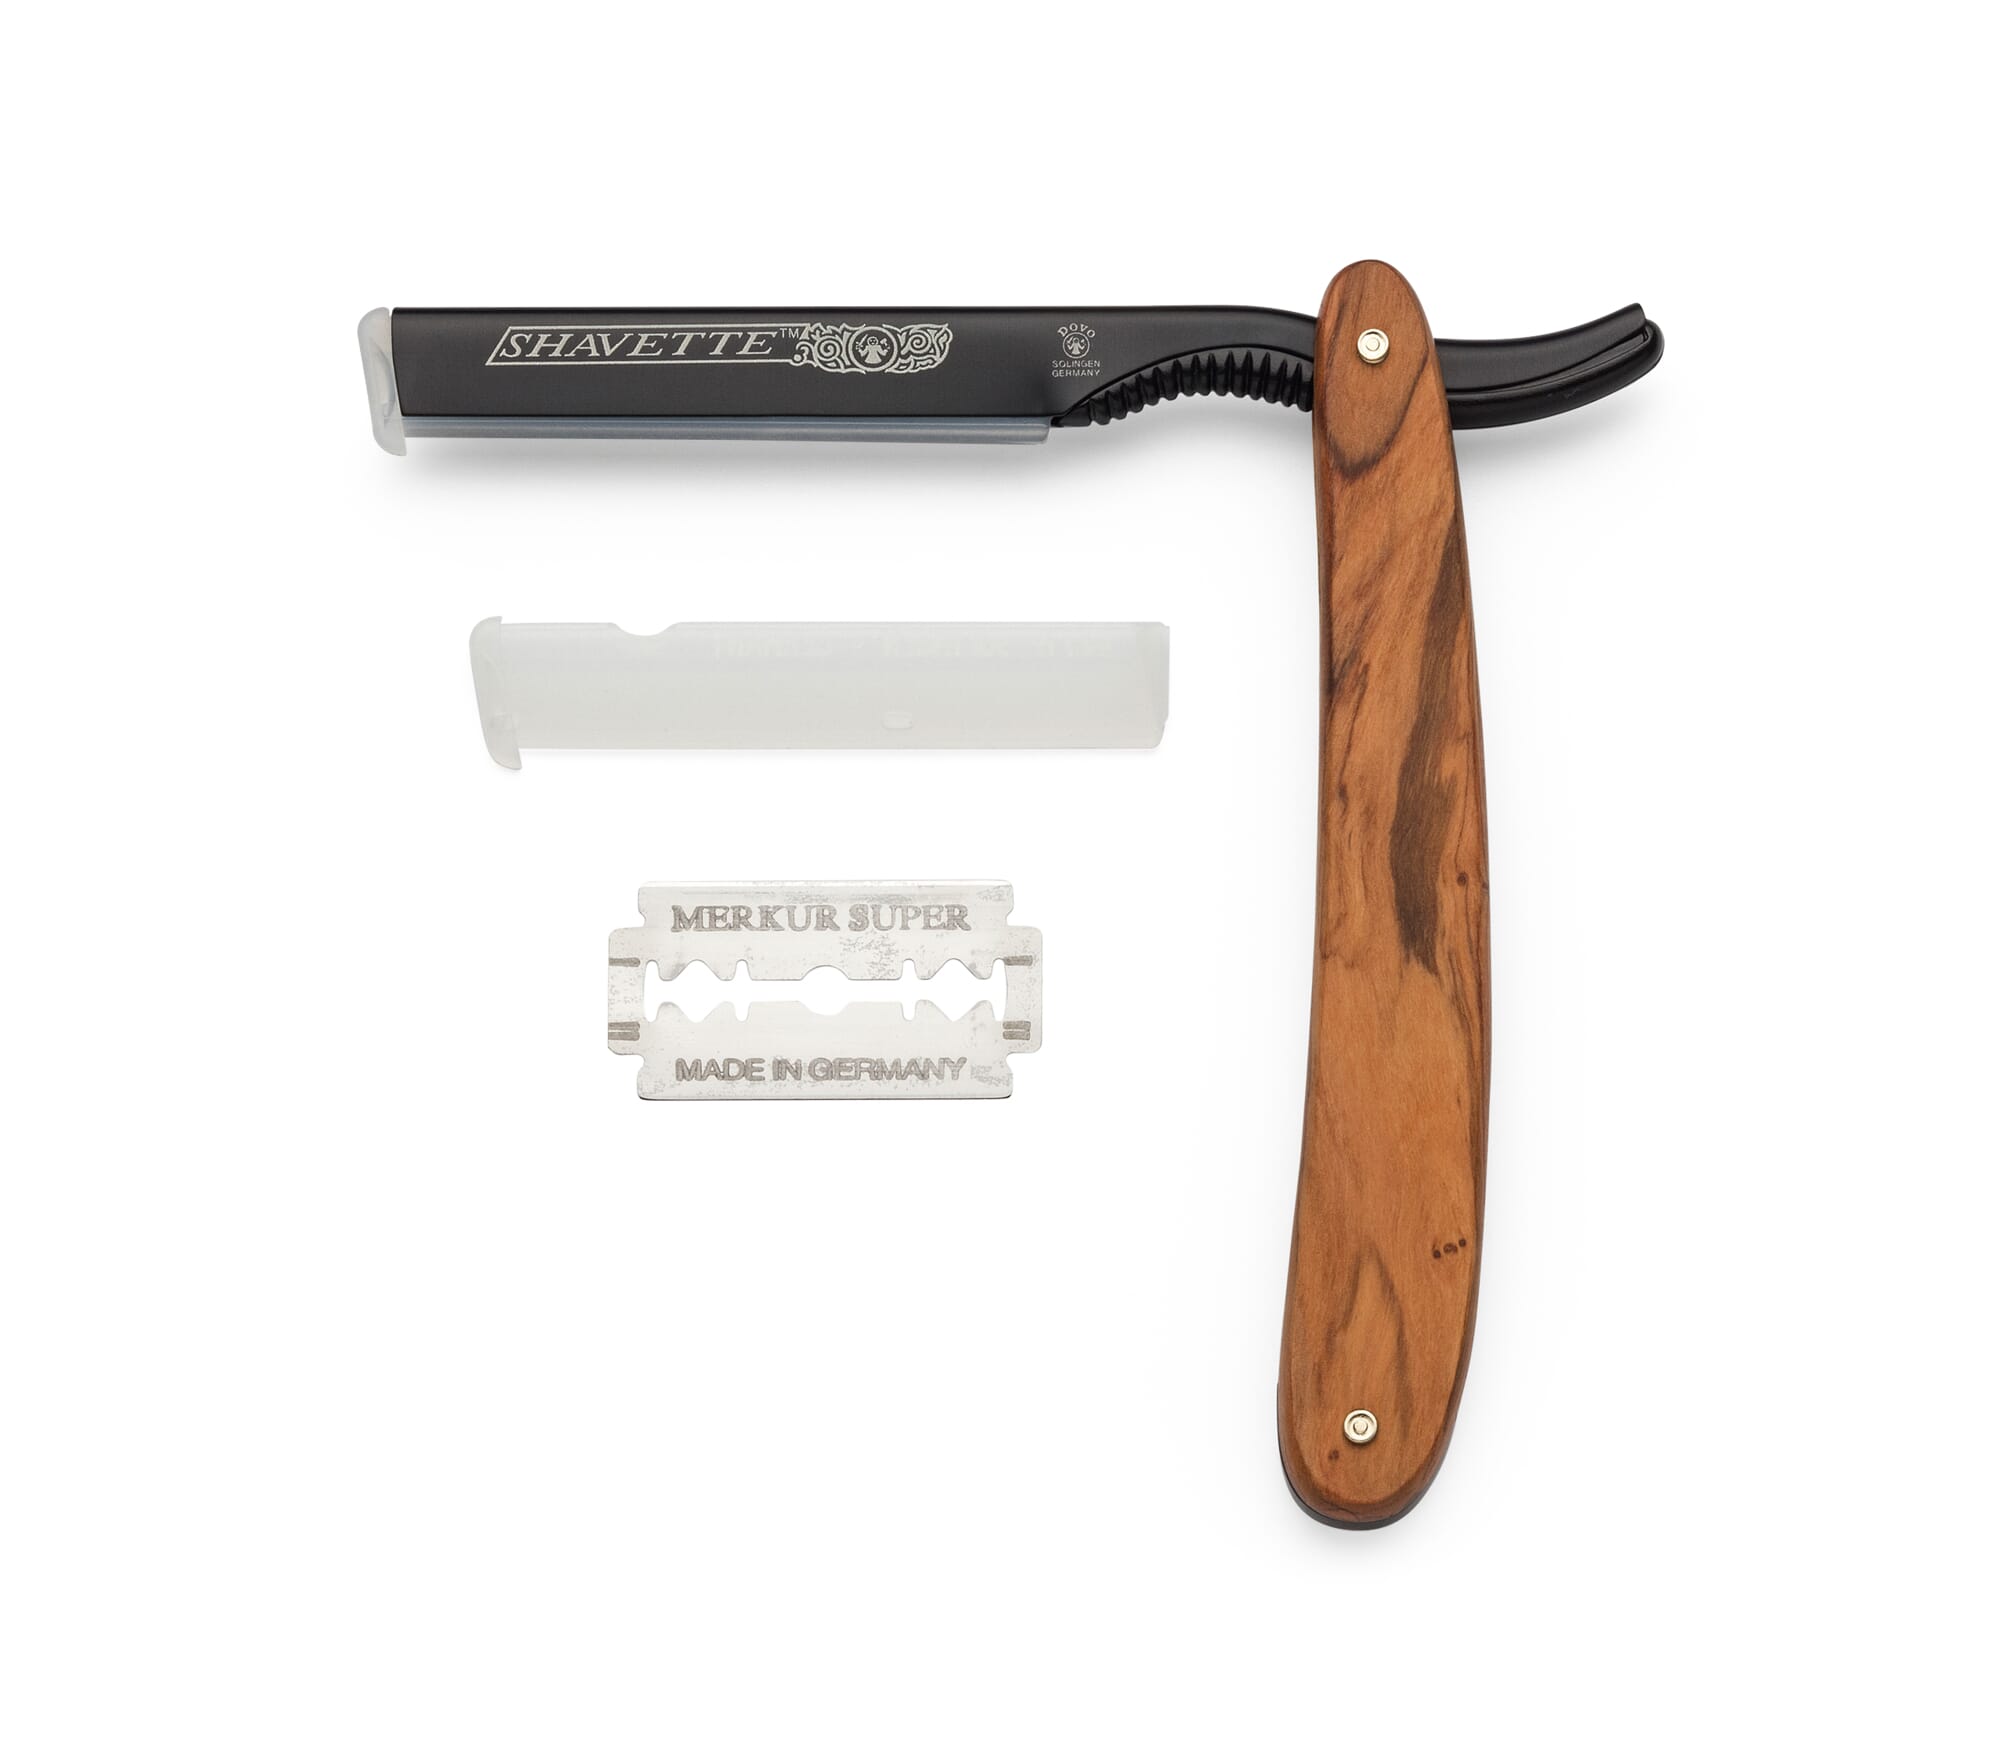 Die klassische Rasur | Rasiermesser und Manufactum Rasierhobel mit